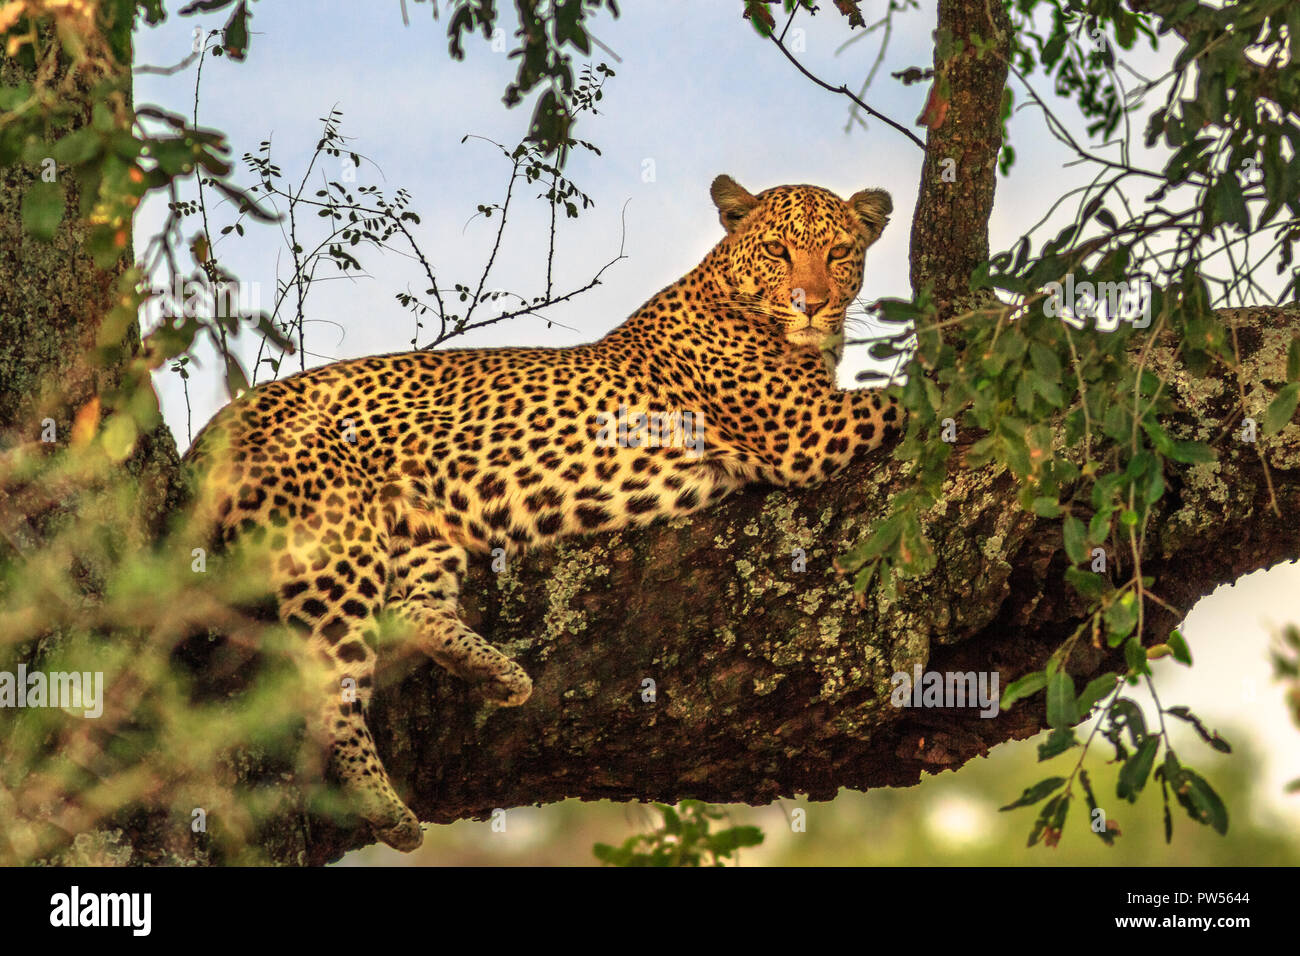 African Léopard, Panthera pardus, se reposant dans un arbre dans la nature de l'habitat. Big cat en Kruger National Park, Afrique du Sud. Le léopard fait partie de la populaire Big Five. Banque D'Images